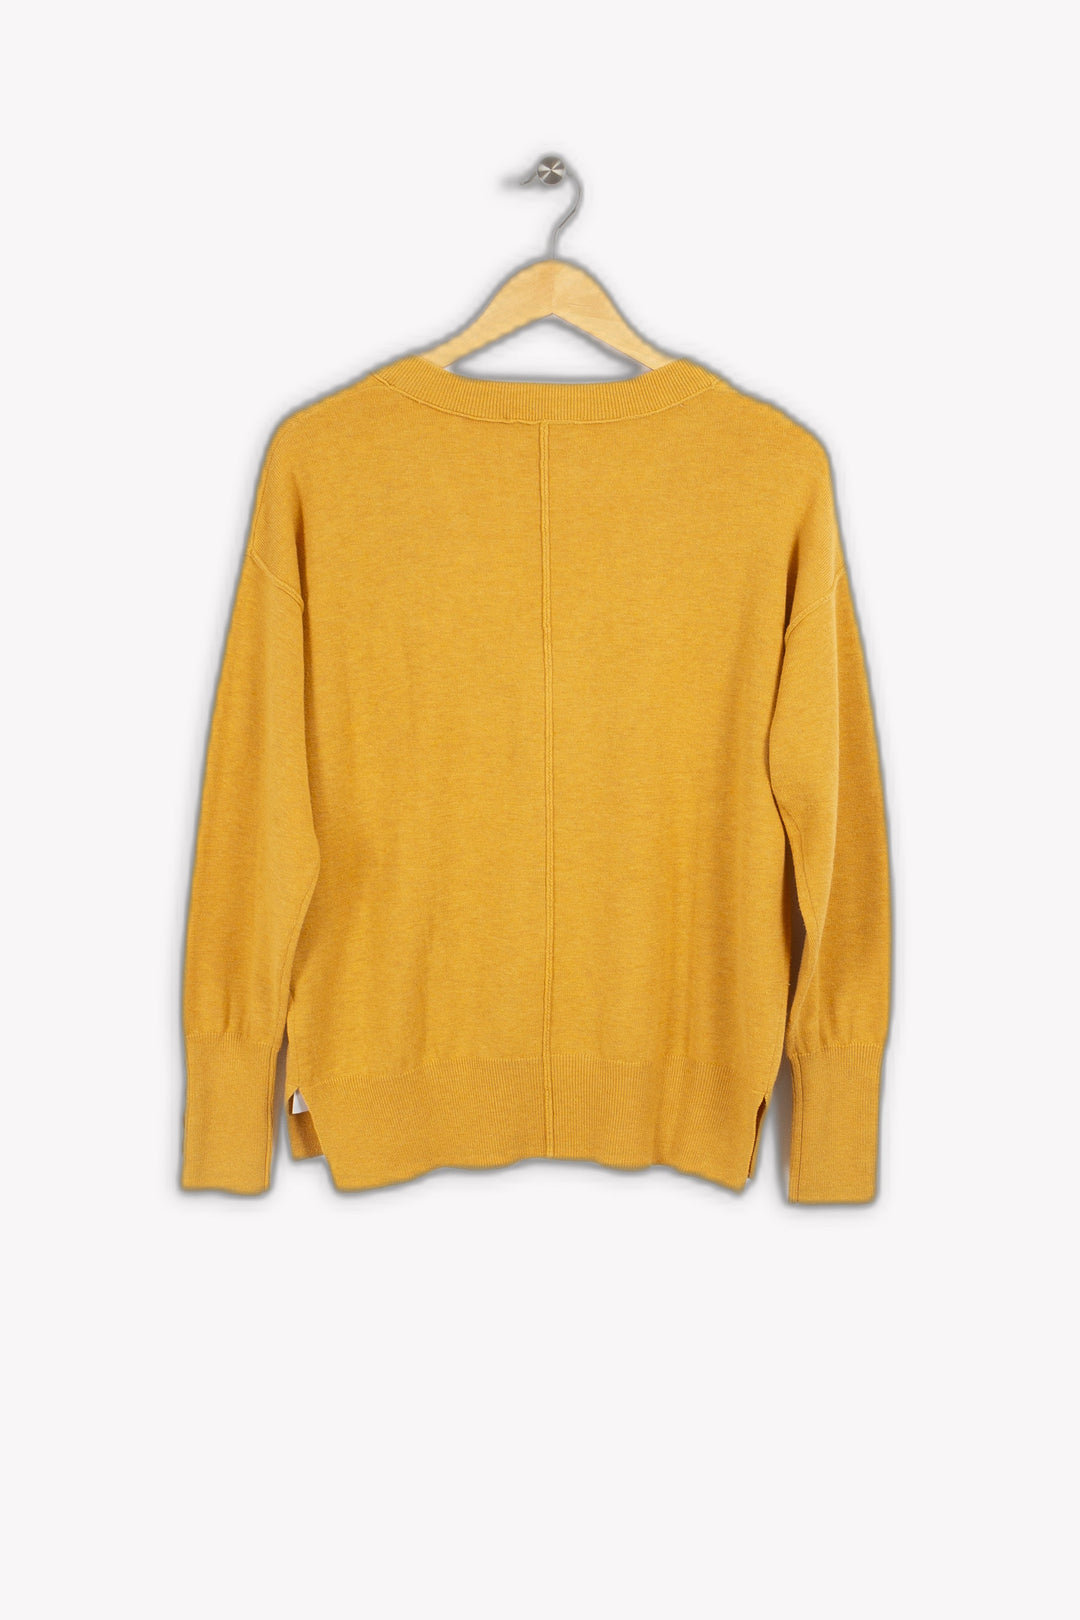 Basic orange sweater - S/36